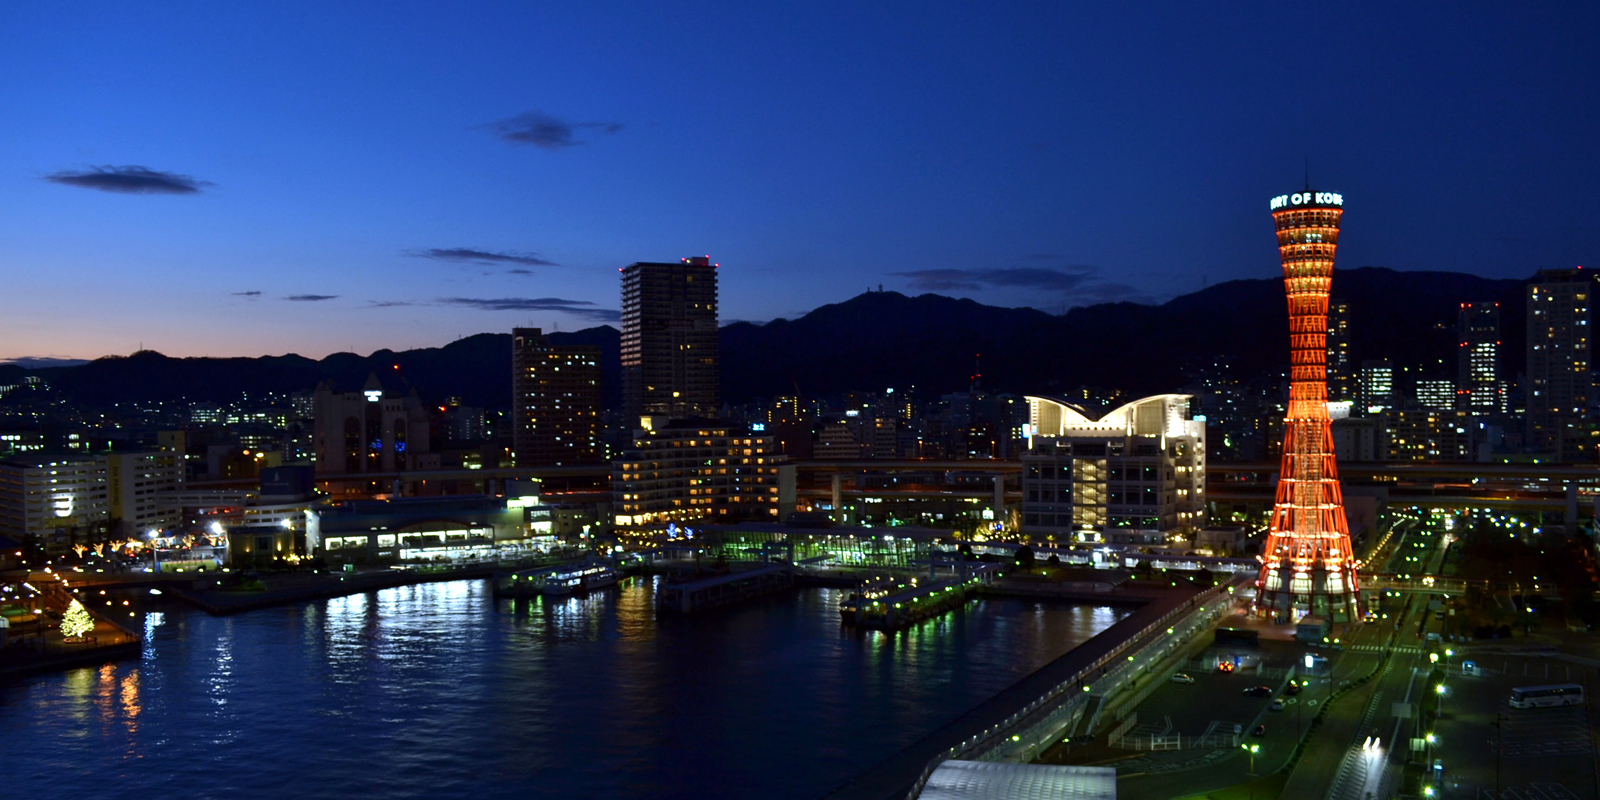 神戶是日本最早開放對外通商的五個港口之一，以開放和國際化的氣氛而聞名。